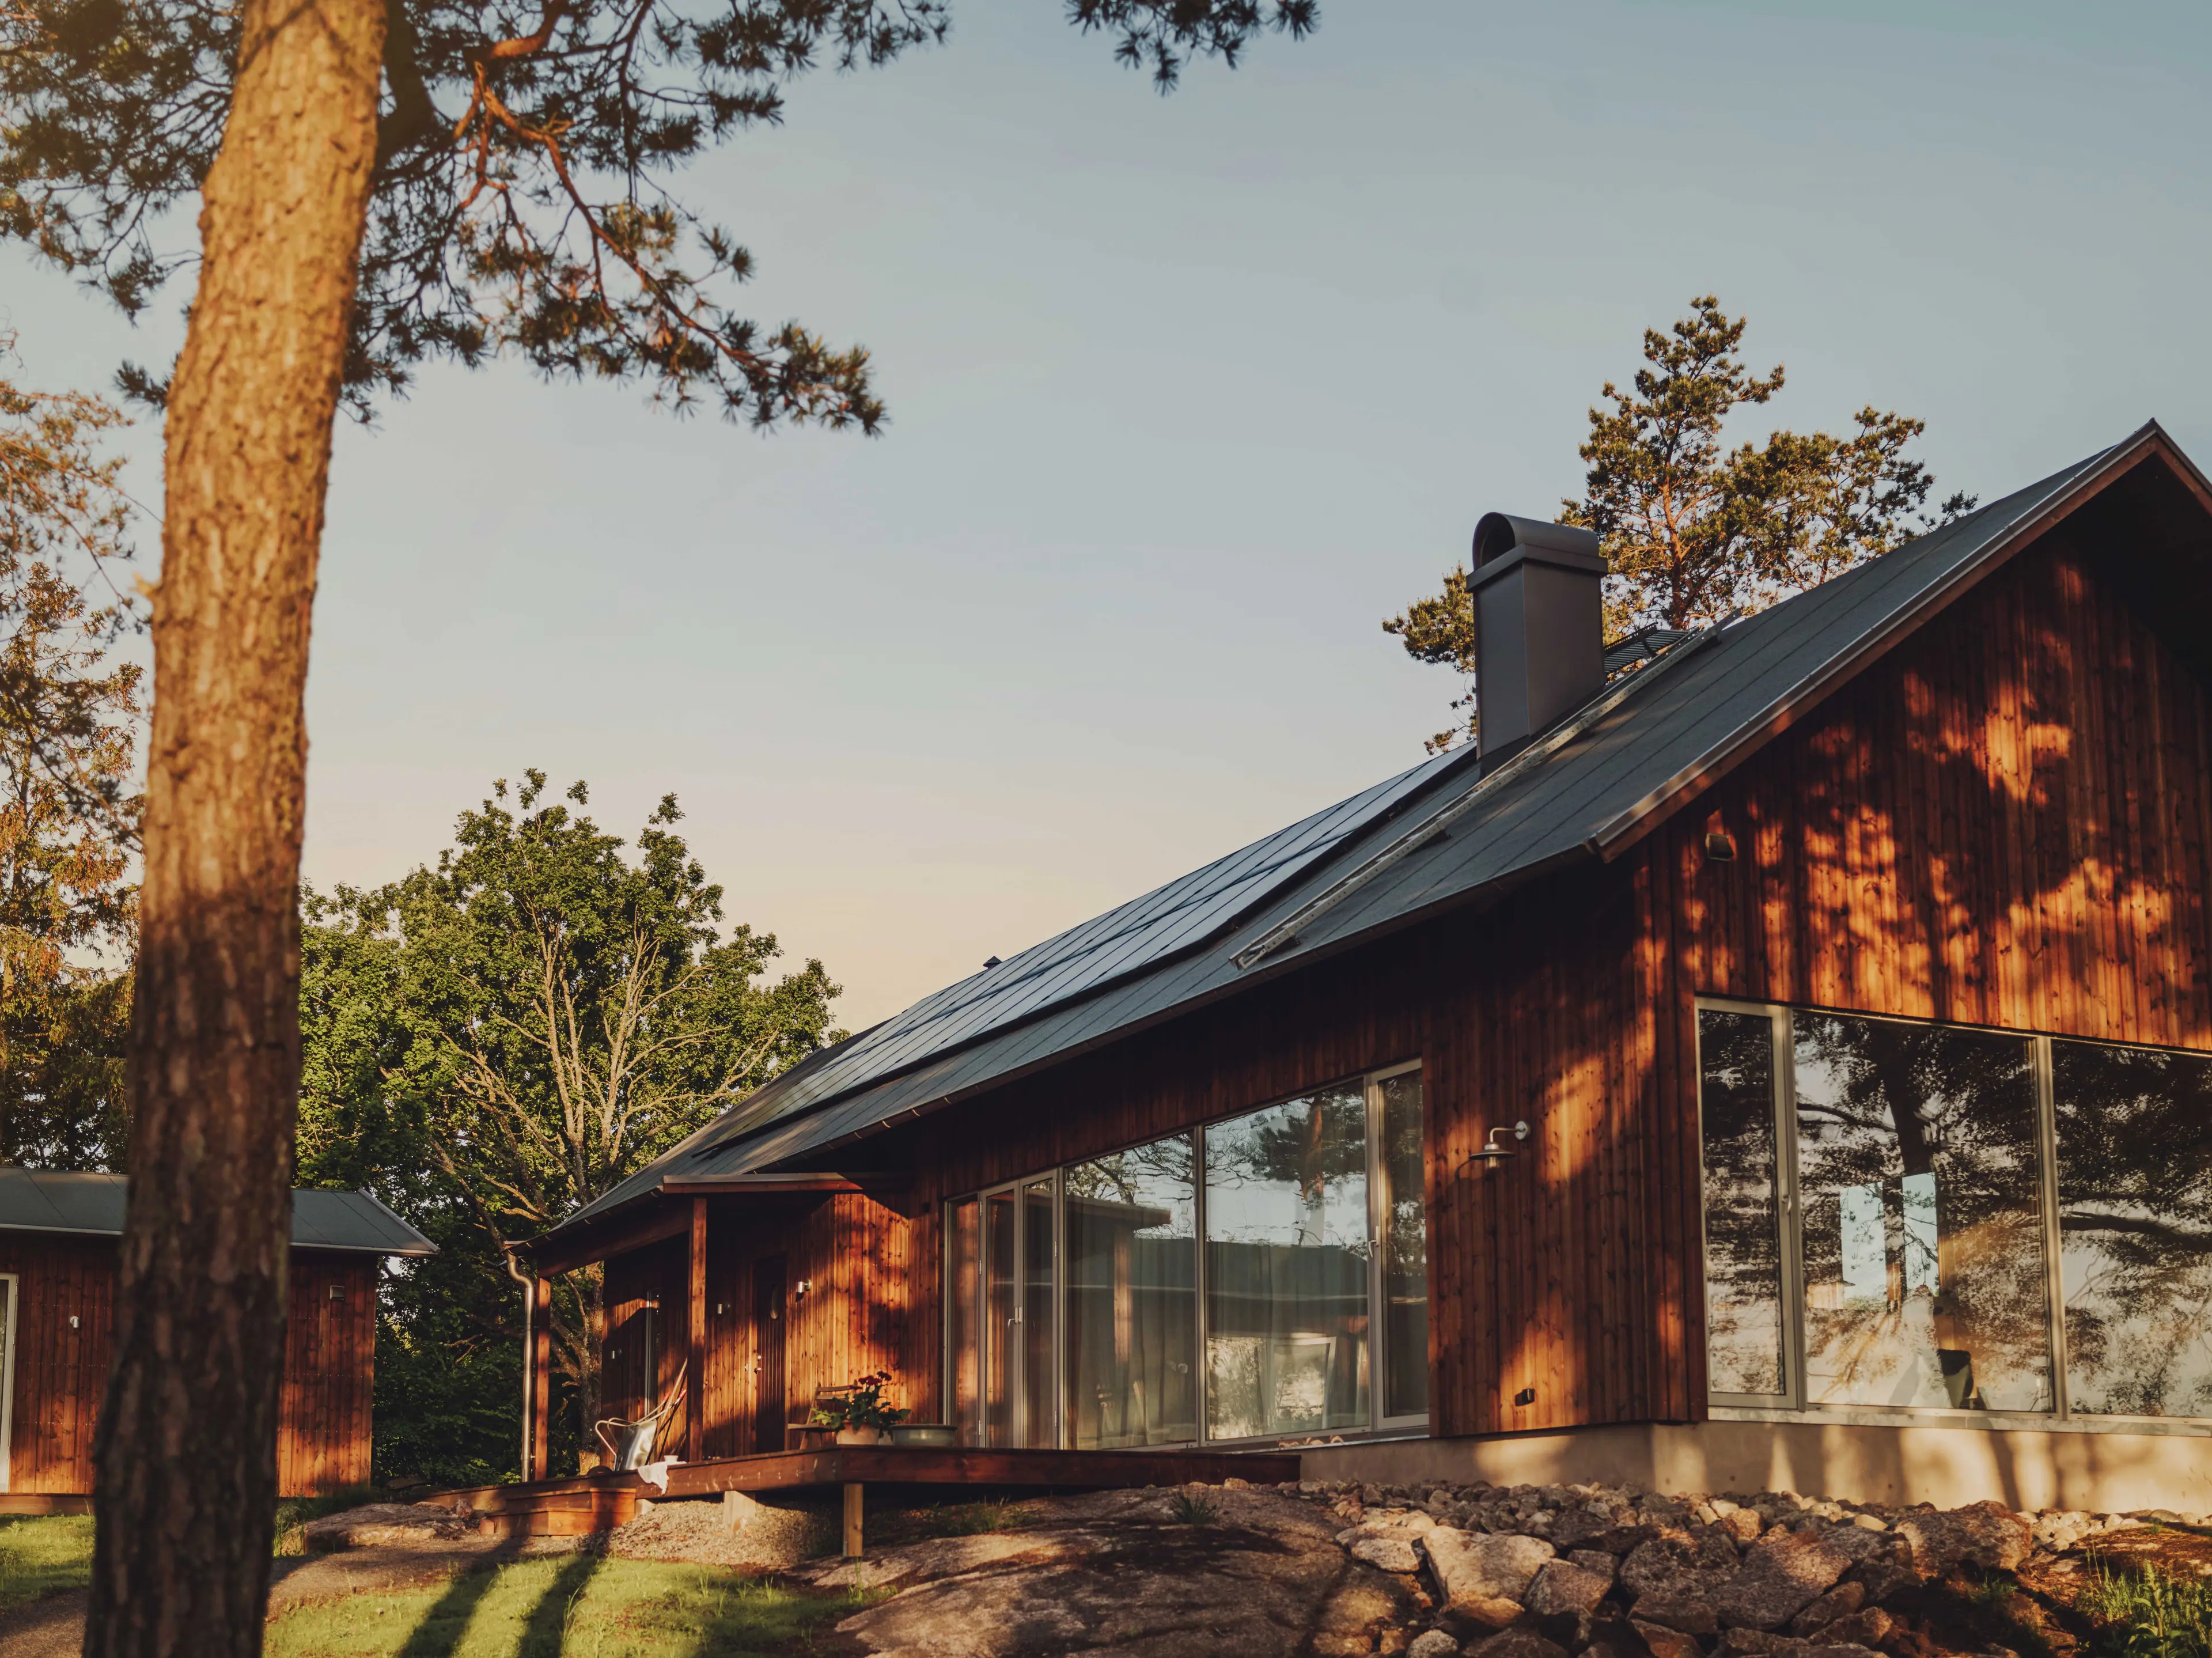 Solaranbieter Svea Solar: Erfahre alles über unser Angebot